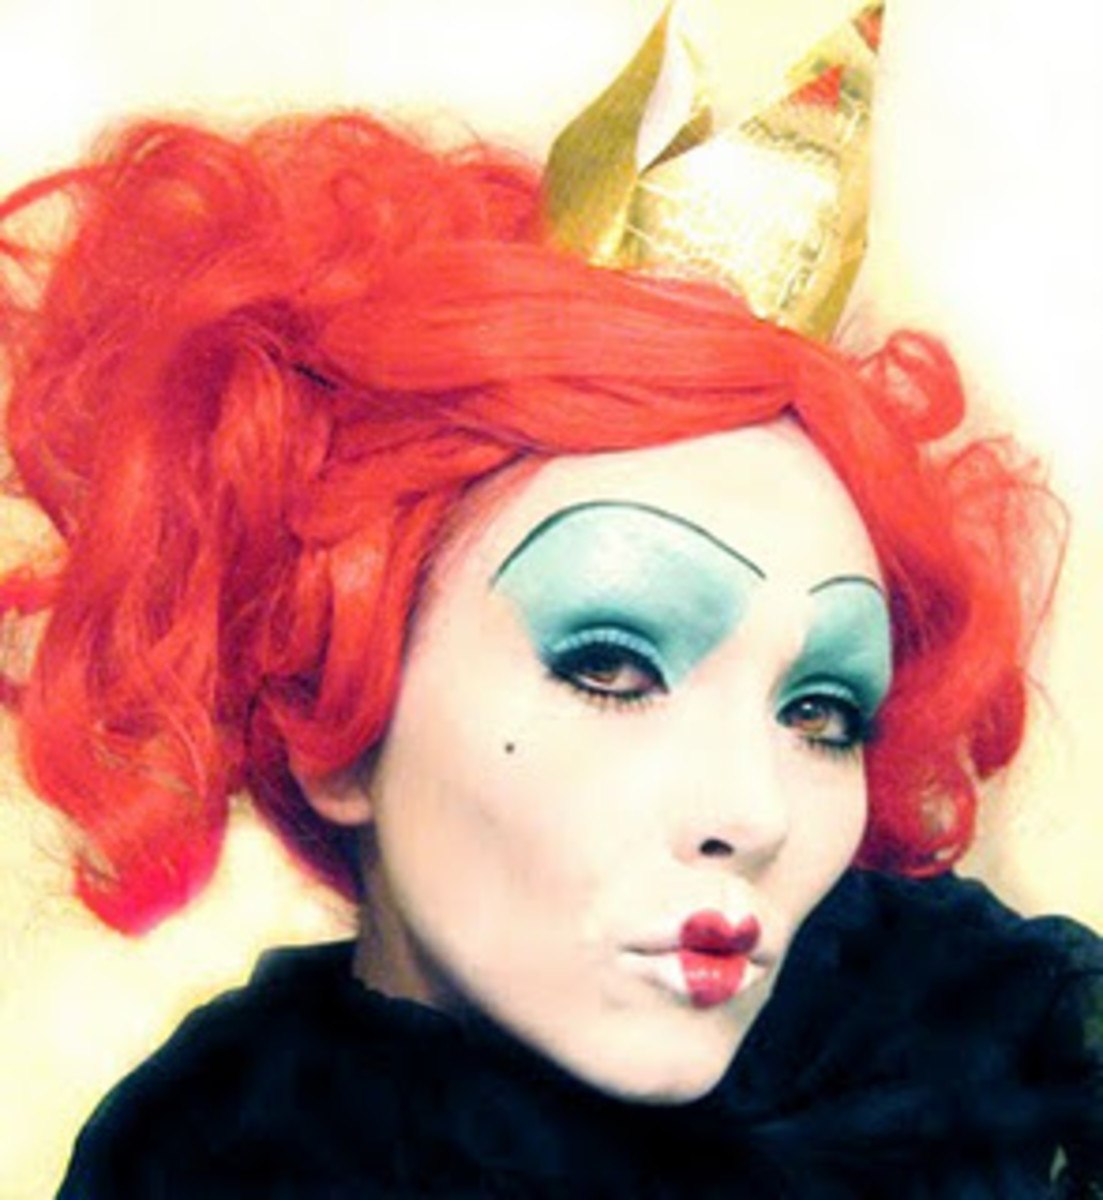 Popular Queen of Hearts makeup based on Tim Burton's film "Alice in Wonderland" 